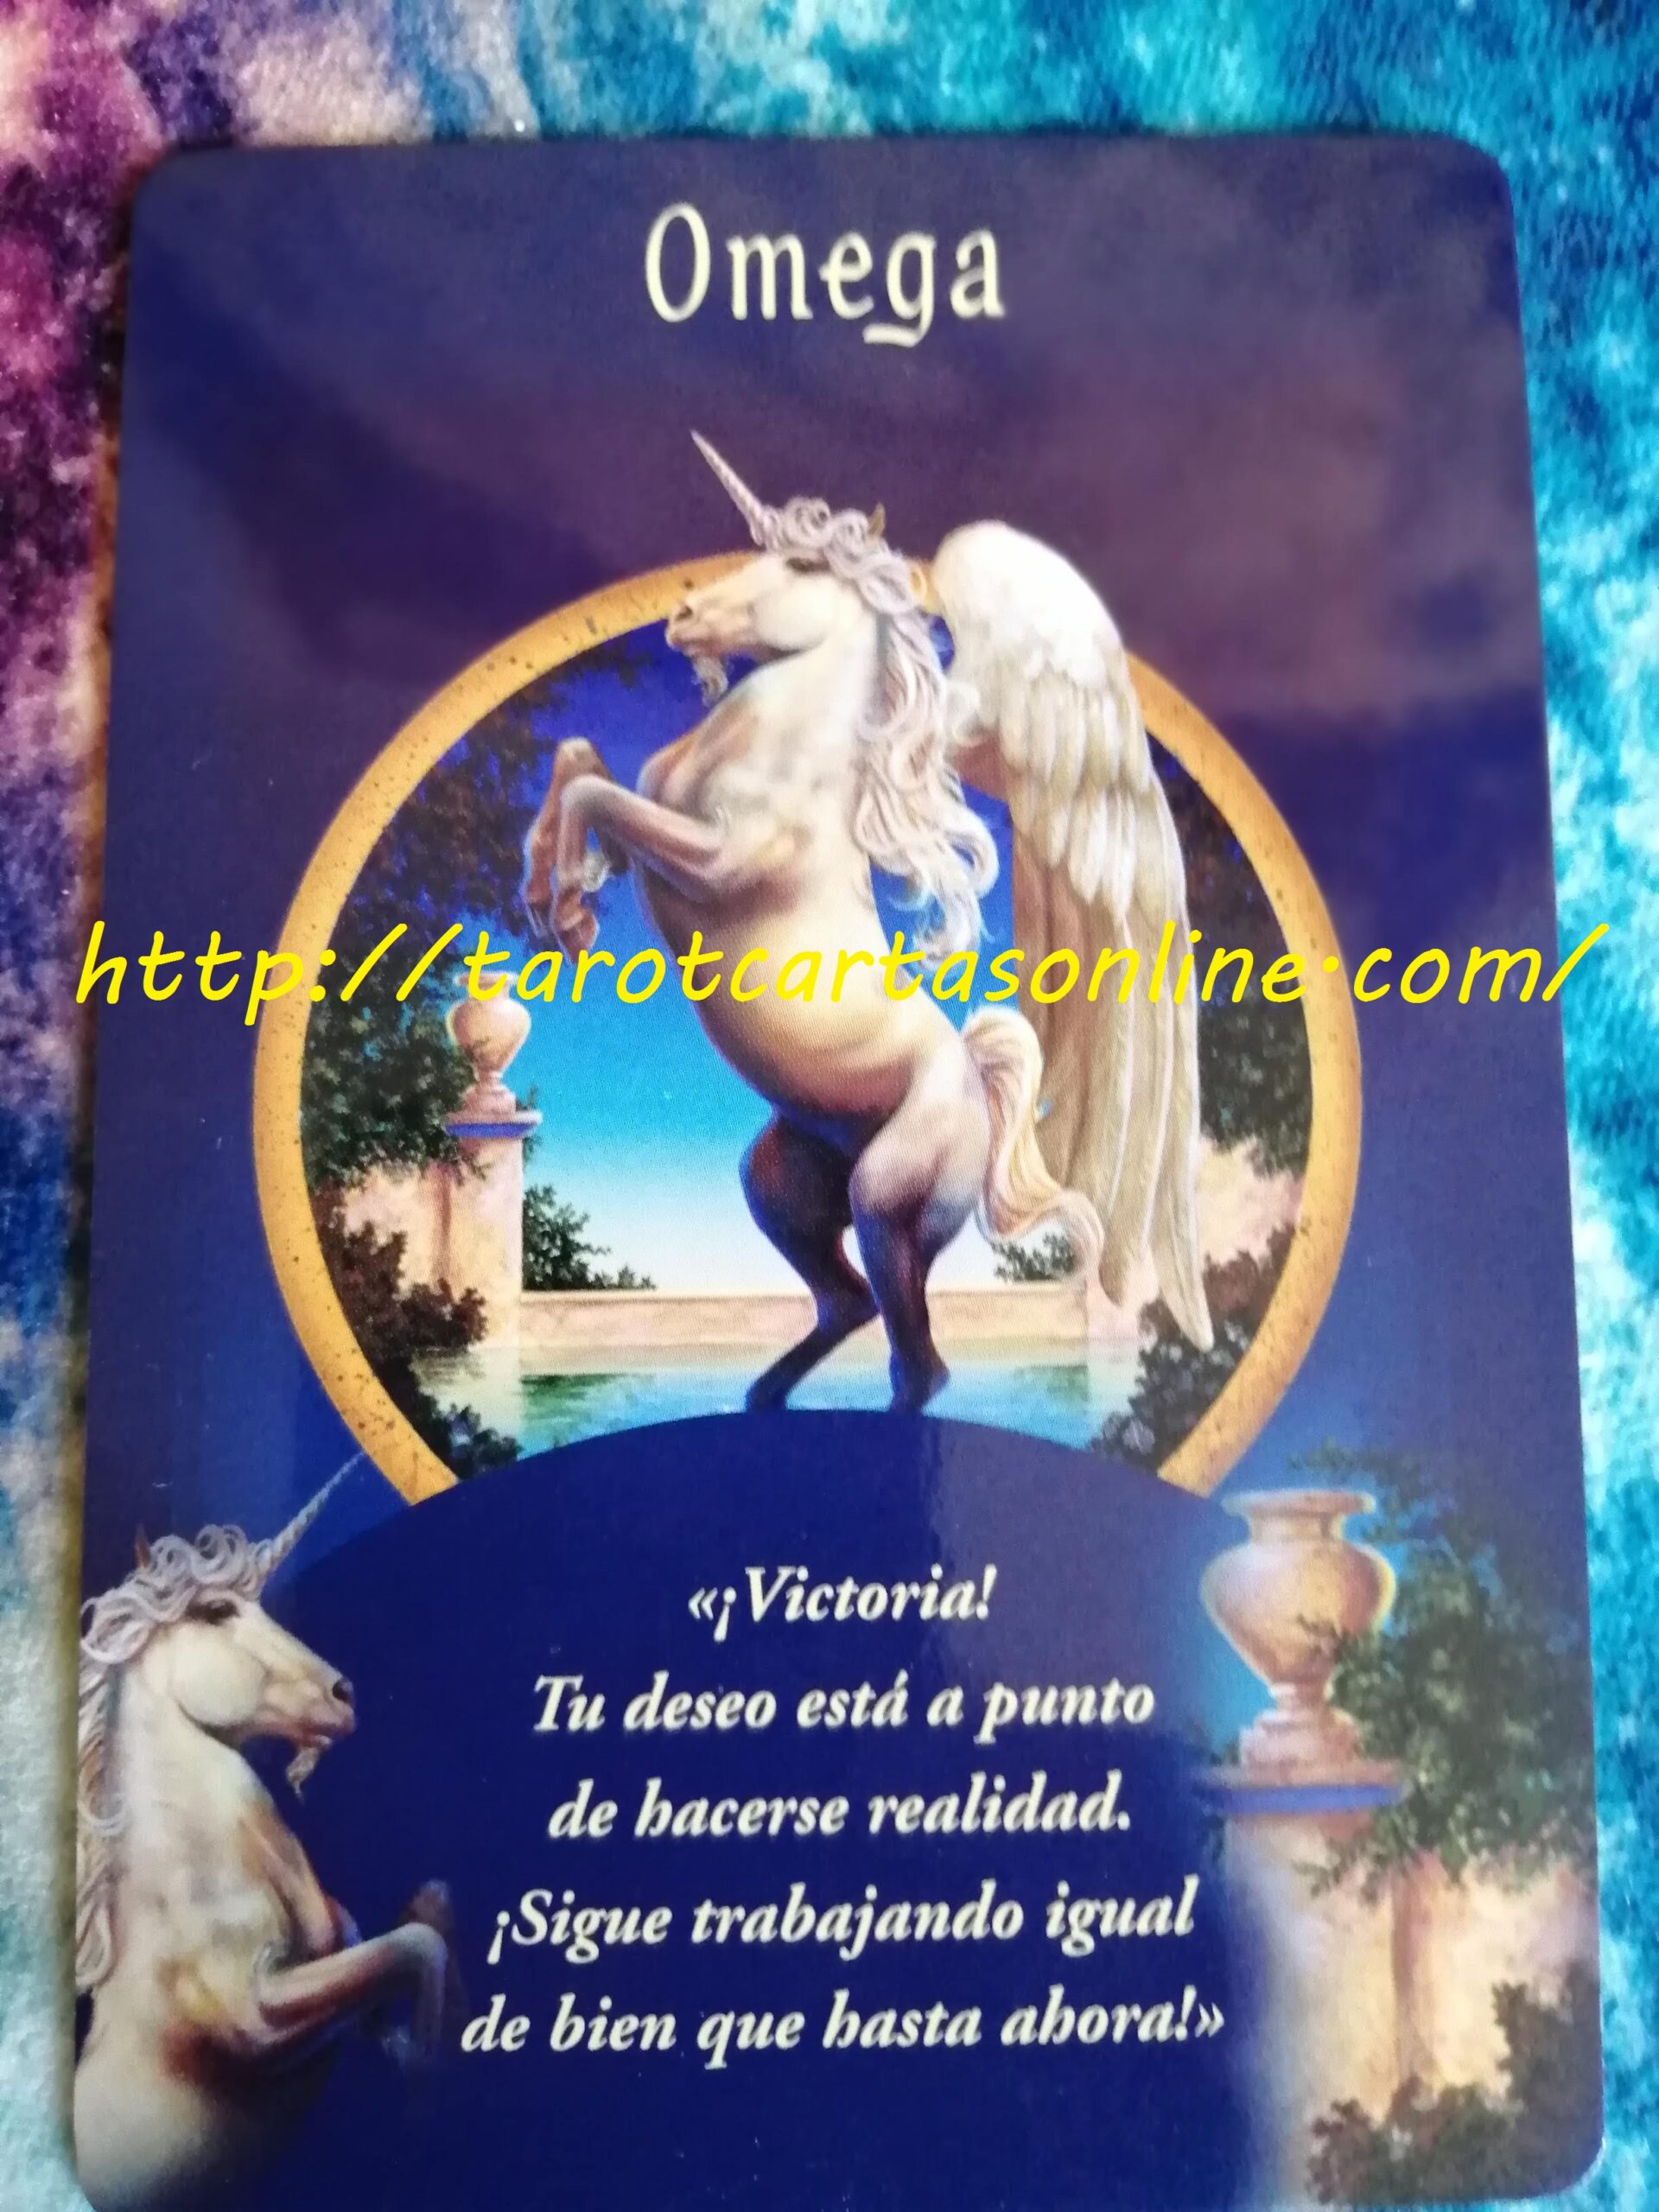 Oraculo-Mensaje de los angeles-adivinacion-consejo